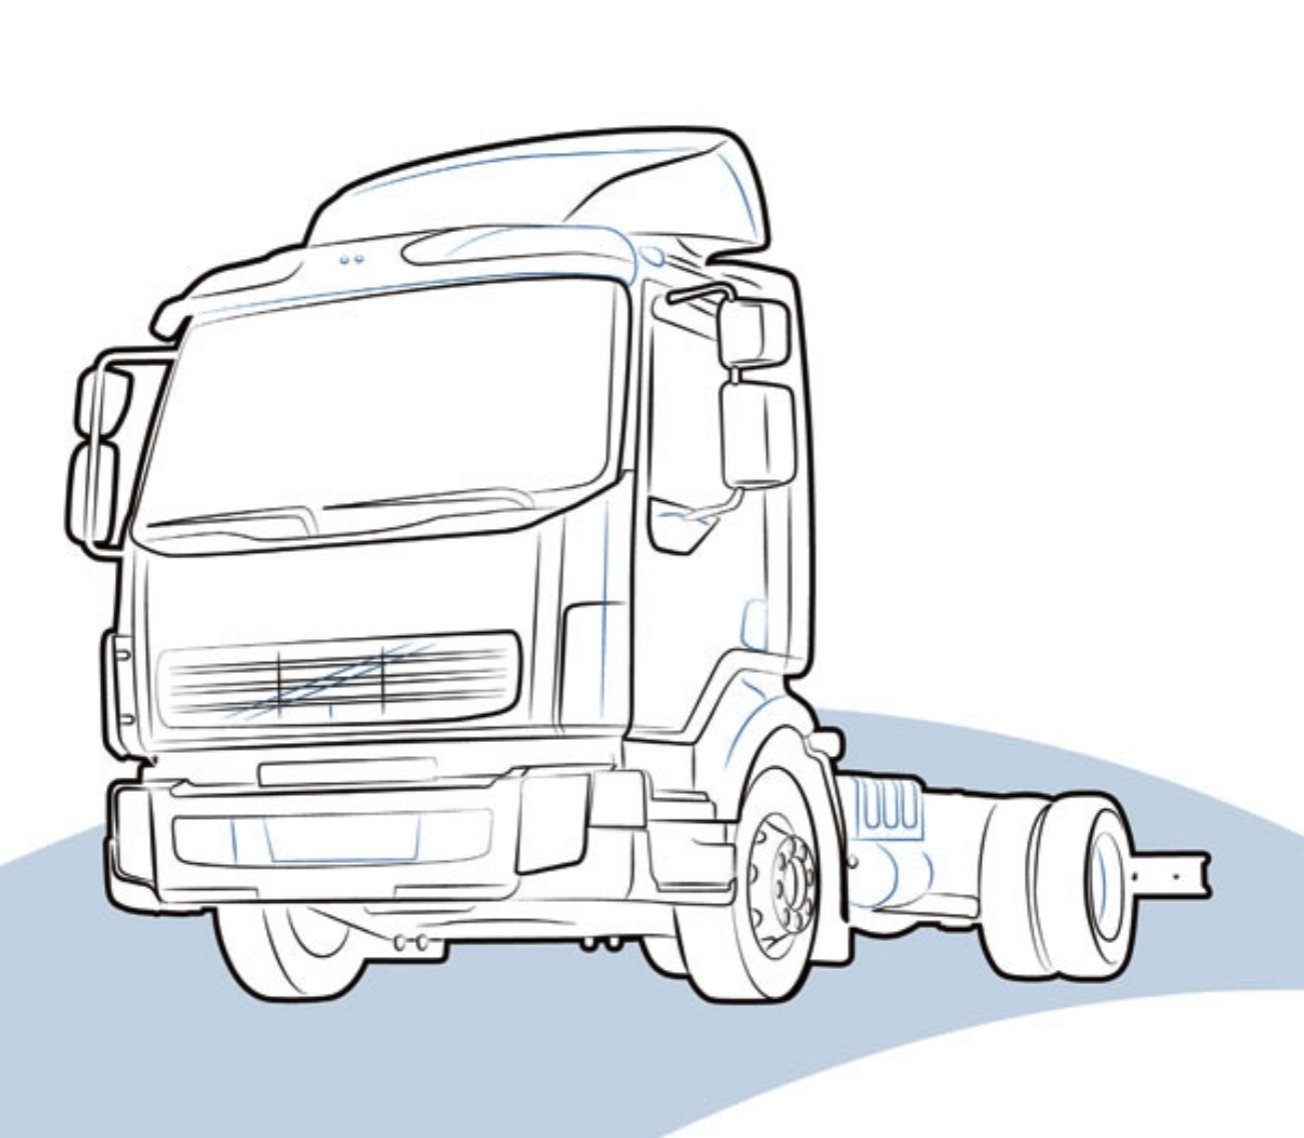 PORTAESTINTORE (6 KG) per DAF LF lato 7422590688 - Carrozzeria Truck